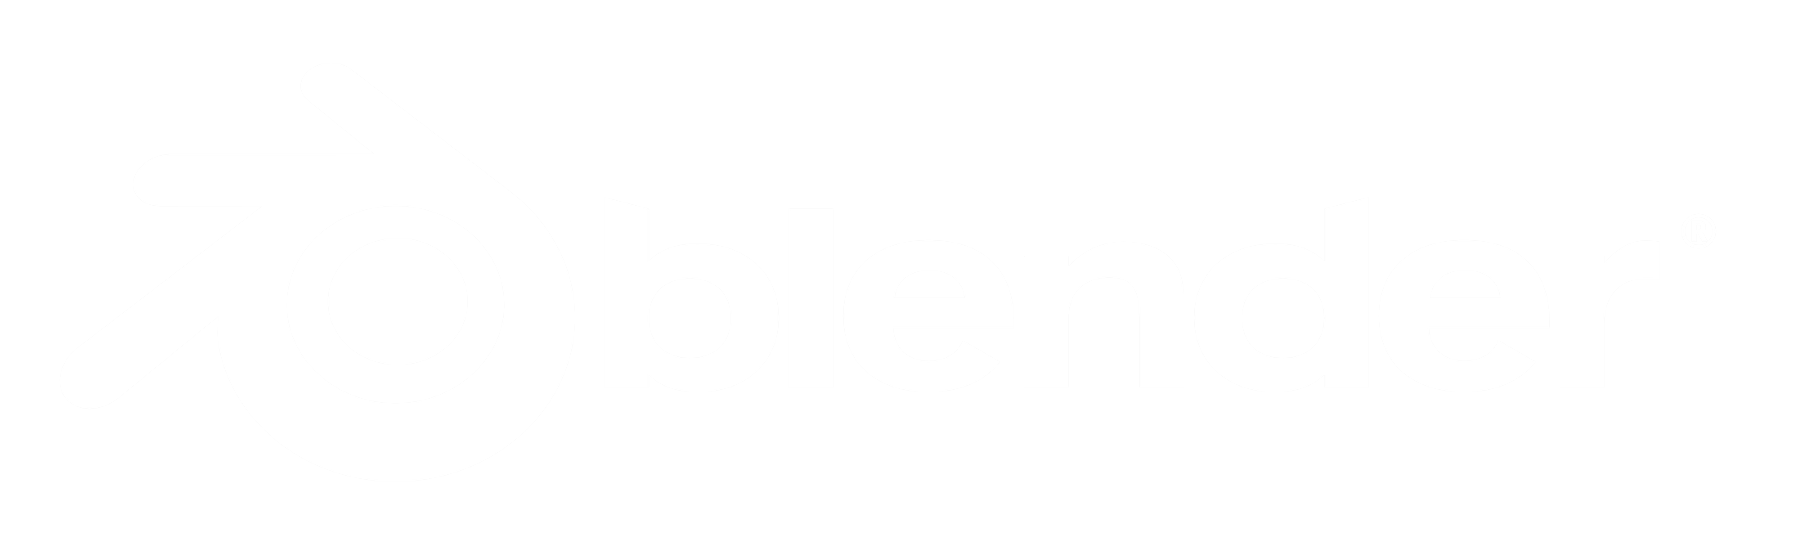 Logo — blender.org